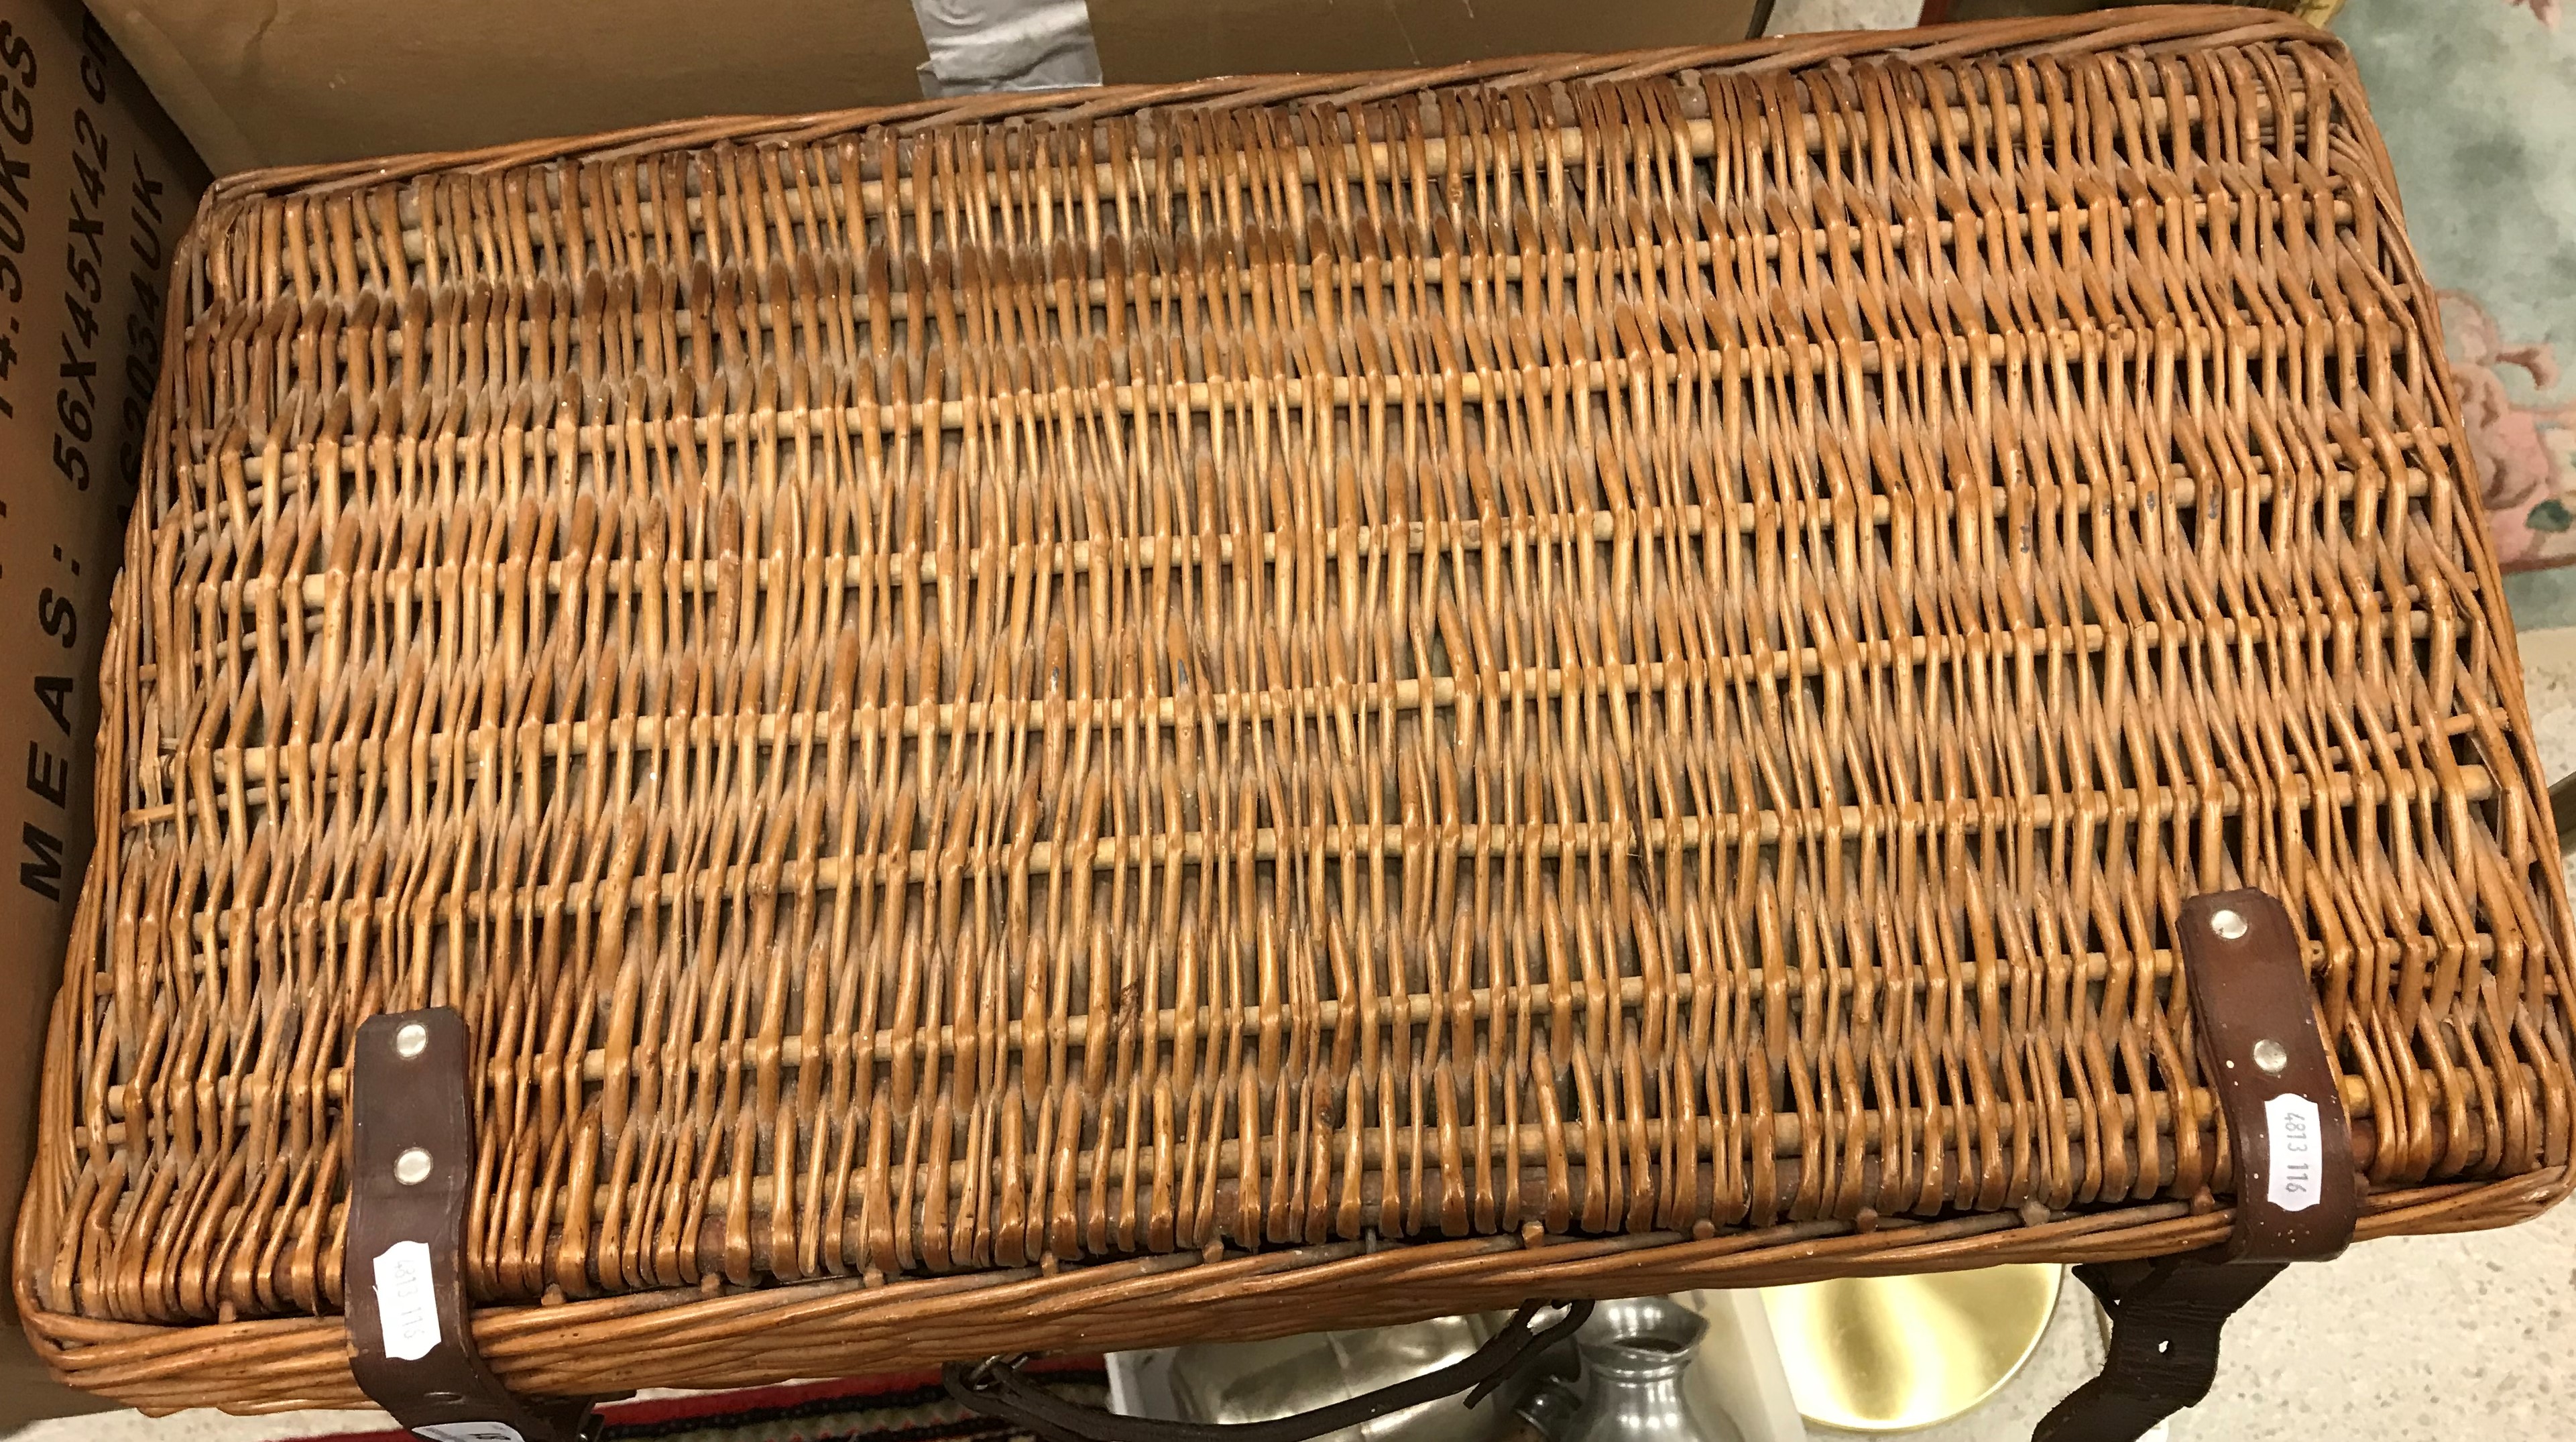 A vintage cane coracle picnic basket wit